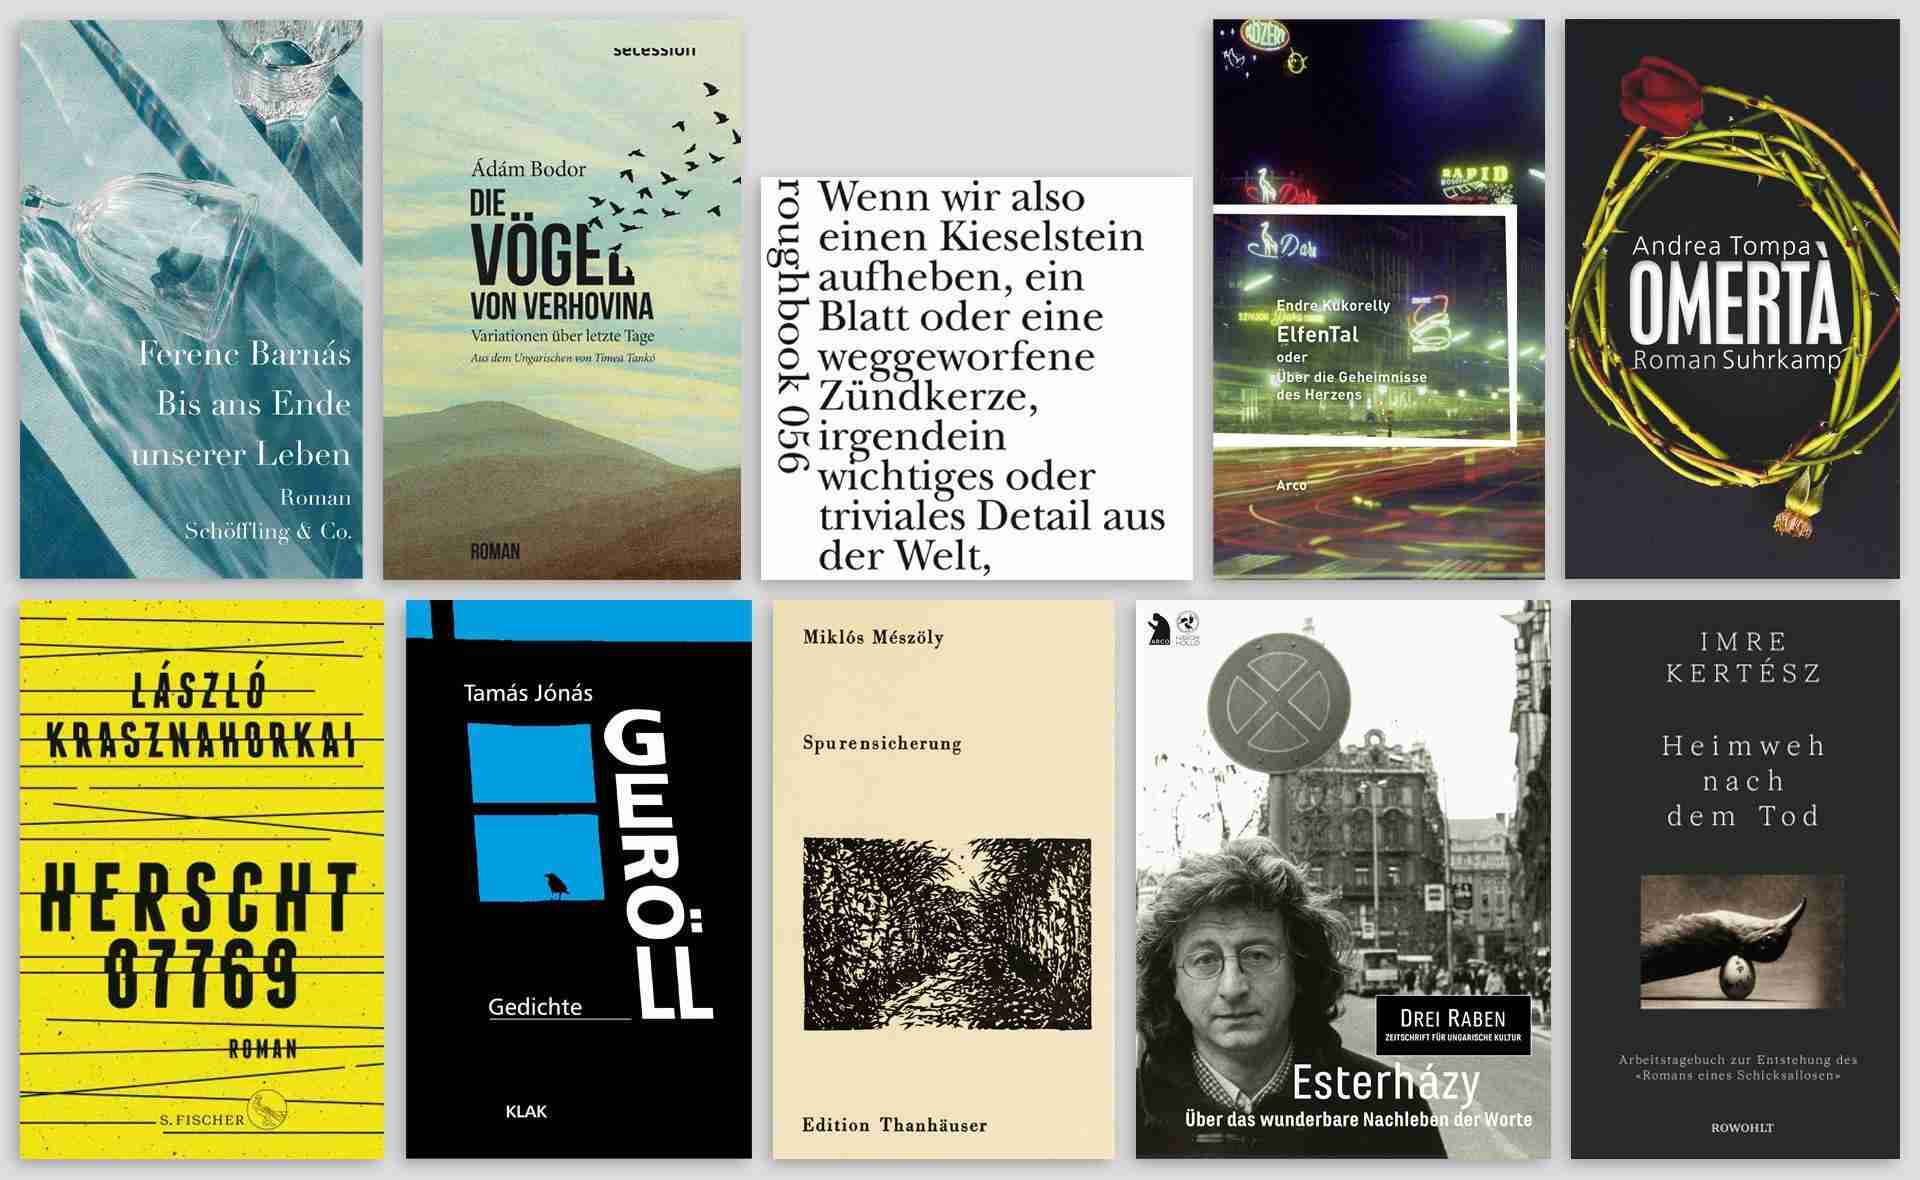 Die jüngsten Neuerscheinungen ungarischer Literatur in deutscher Übersetzung auf einen Blick!
